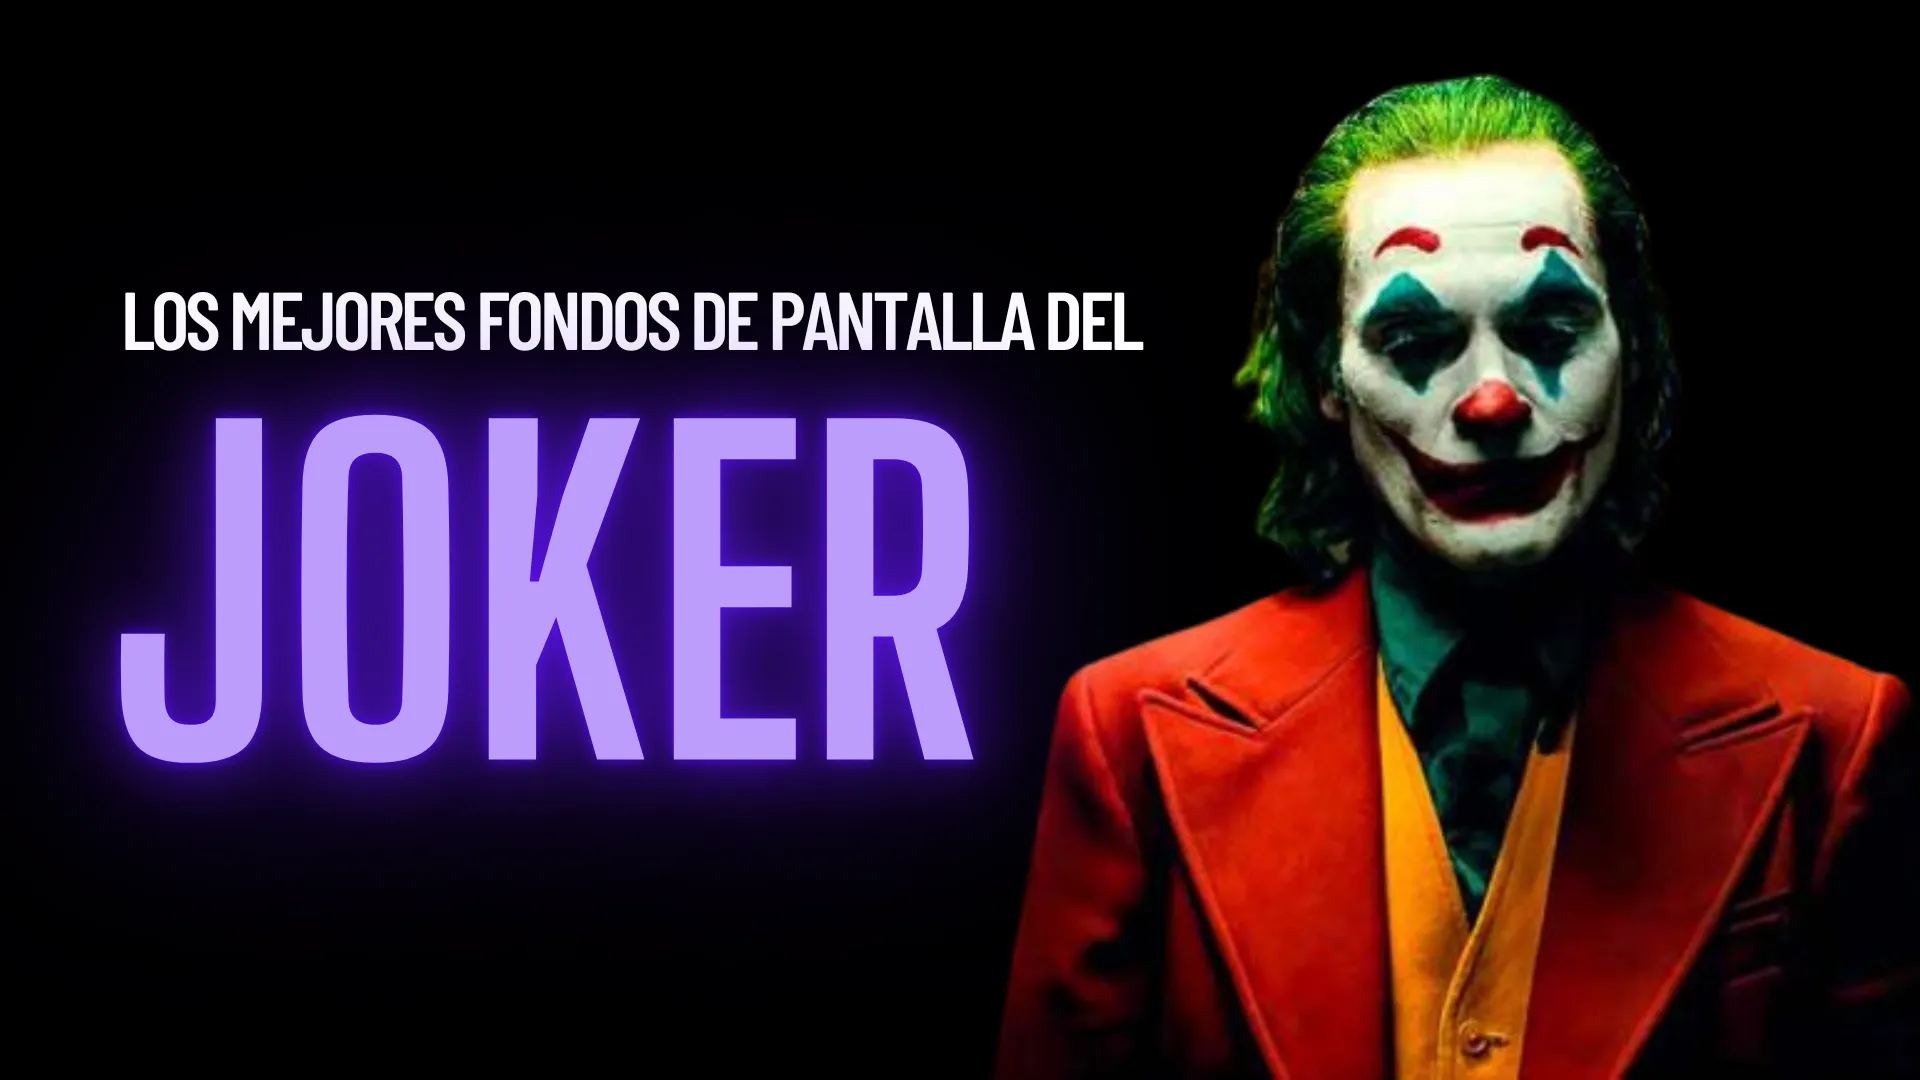 Fondos de Pantalla de The Joker 2019